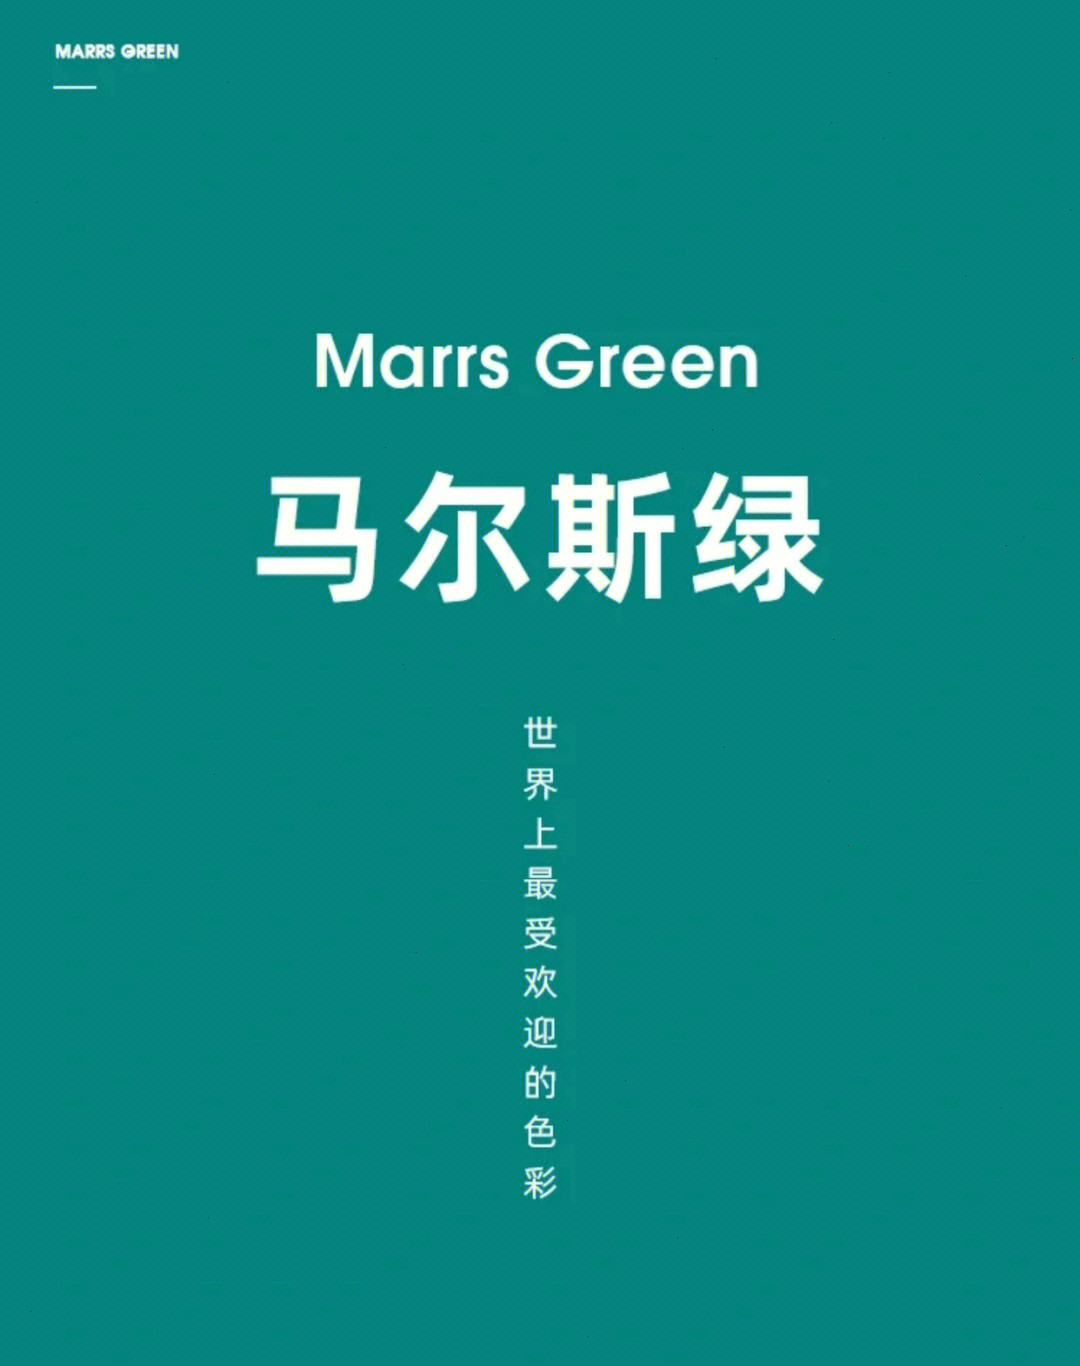 马尔斯绿颜色标准图片